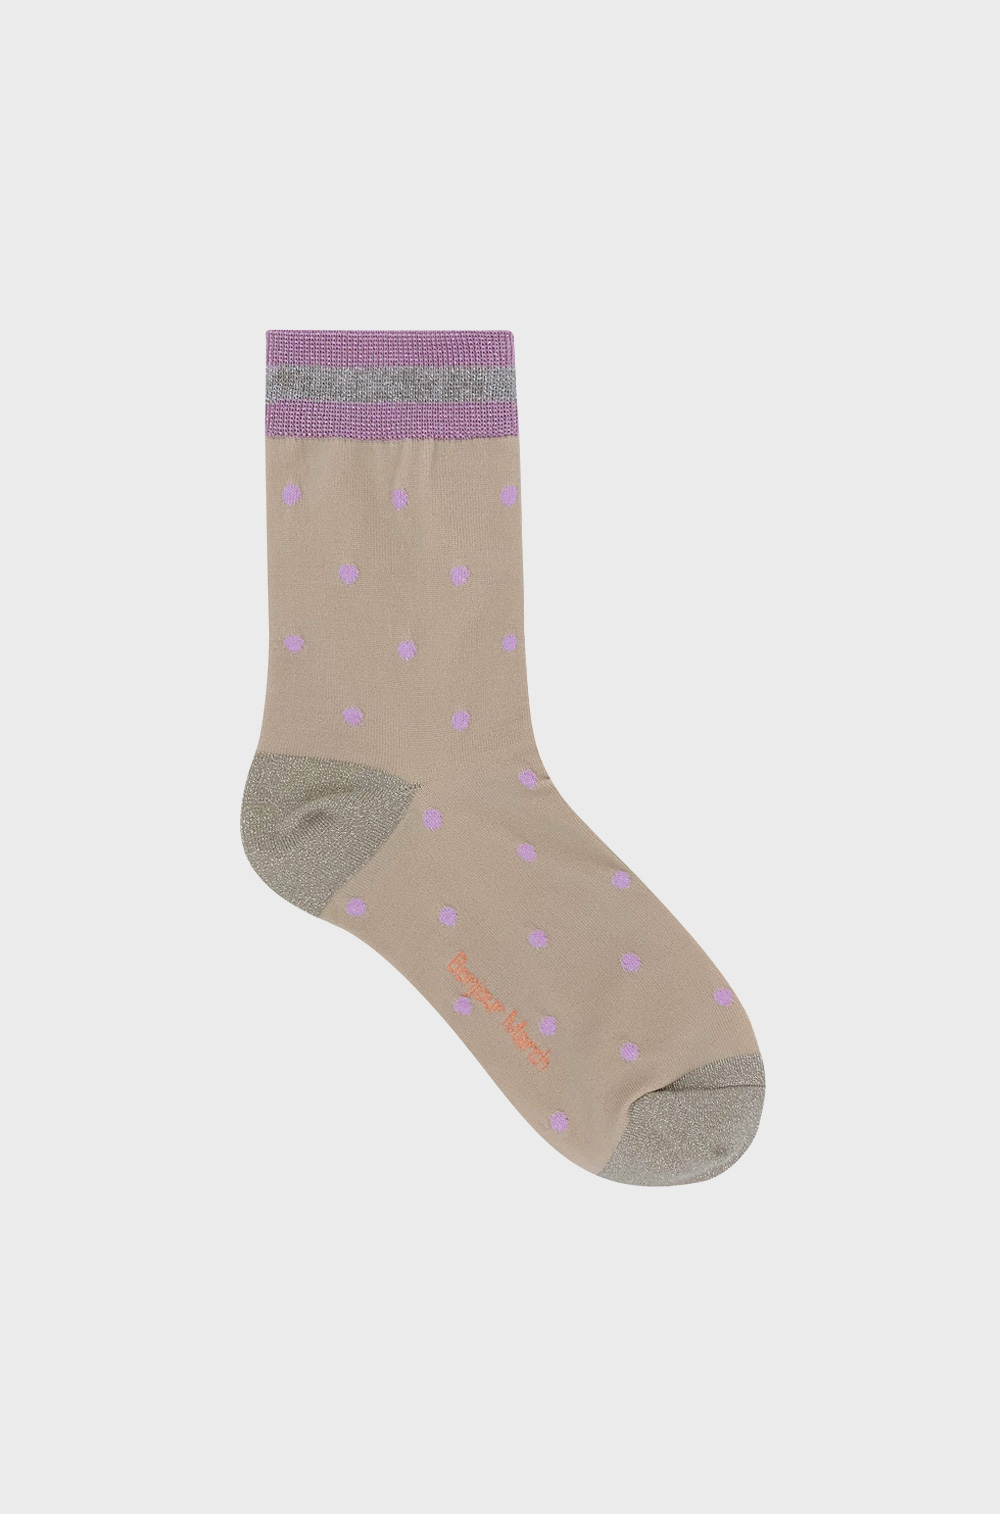 Vintage lilac socks